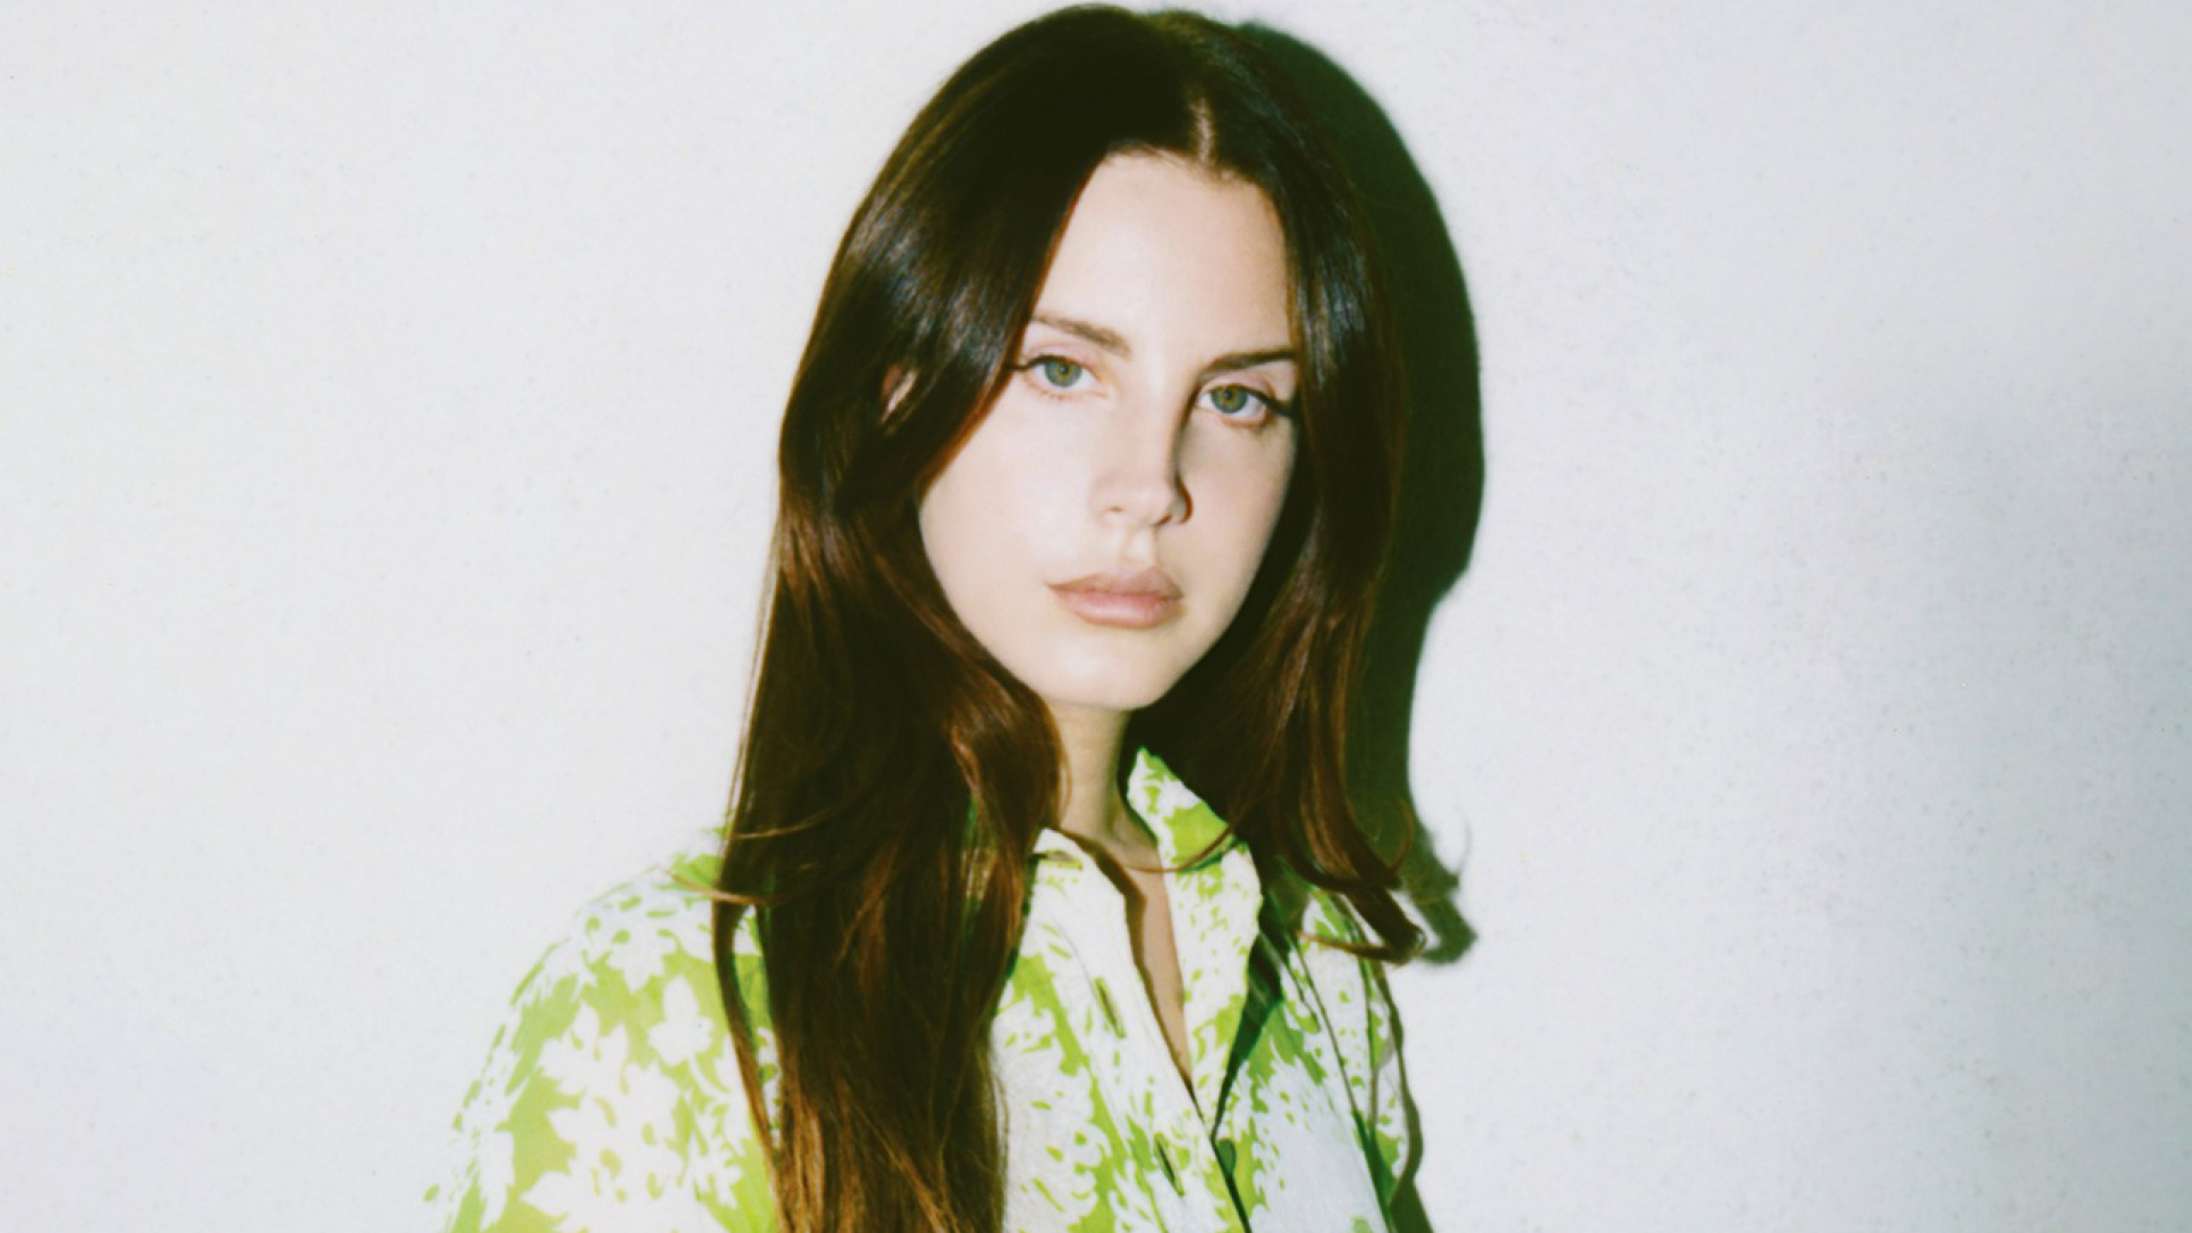 Lana Del Rey forsvarer sit kontroversielle Instagram-opslag: »Det siger mere om jer, end det gør om mig«